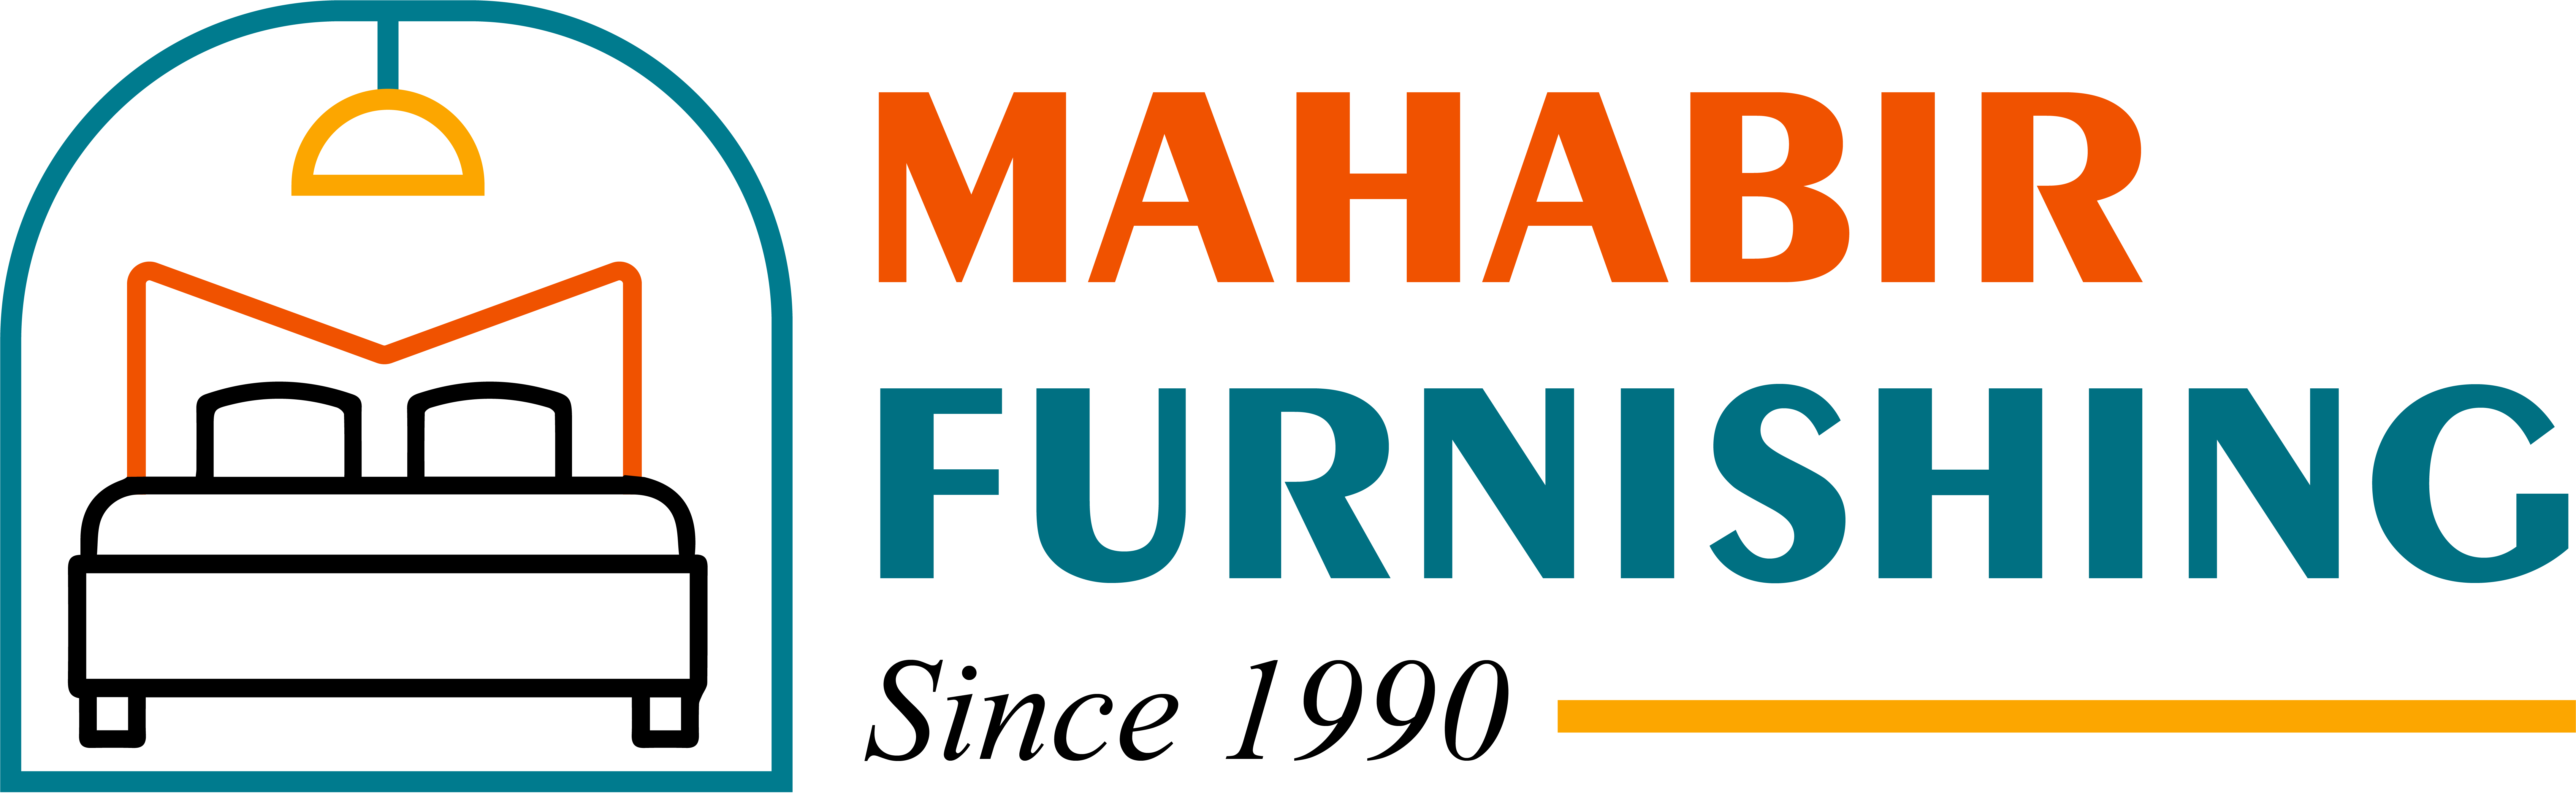 mahabir furnishing logo